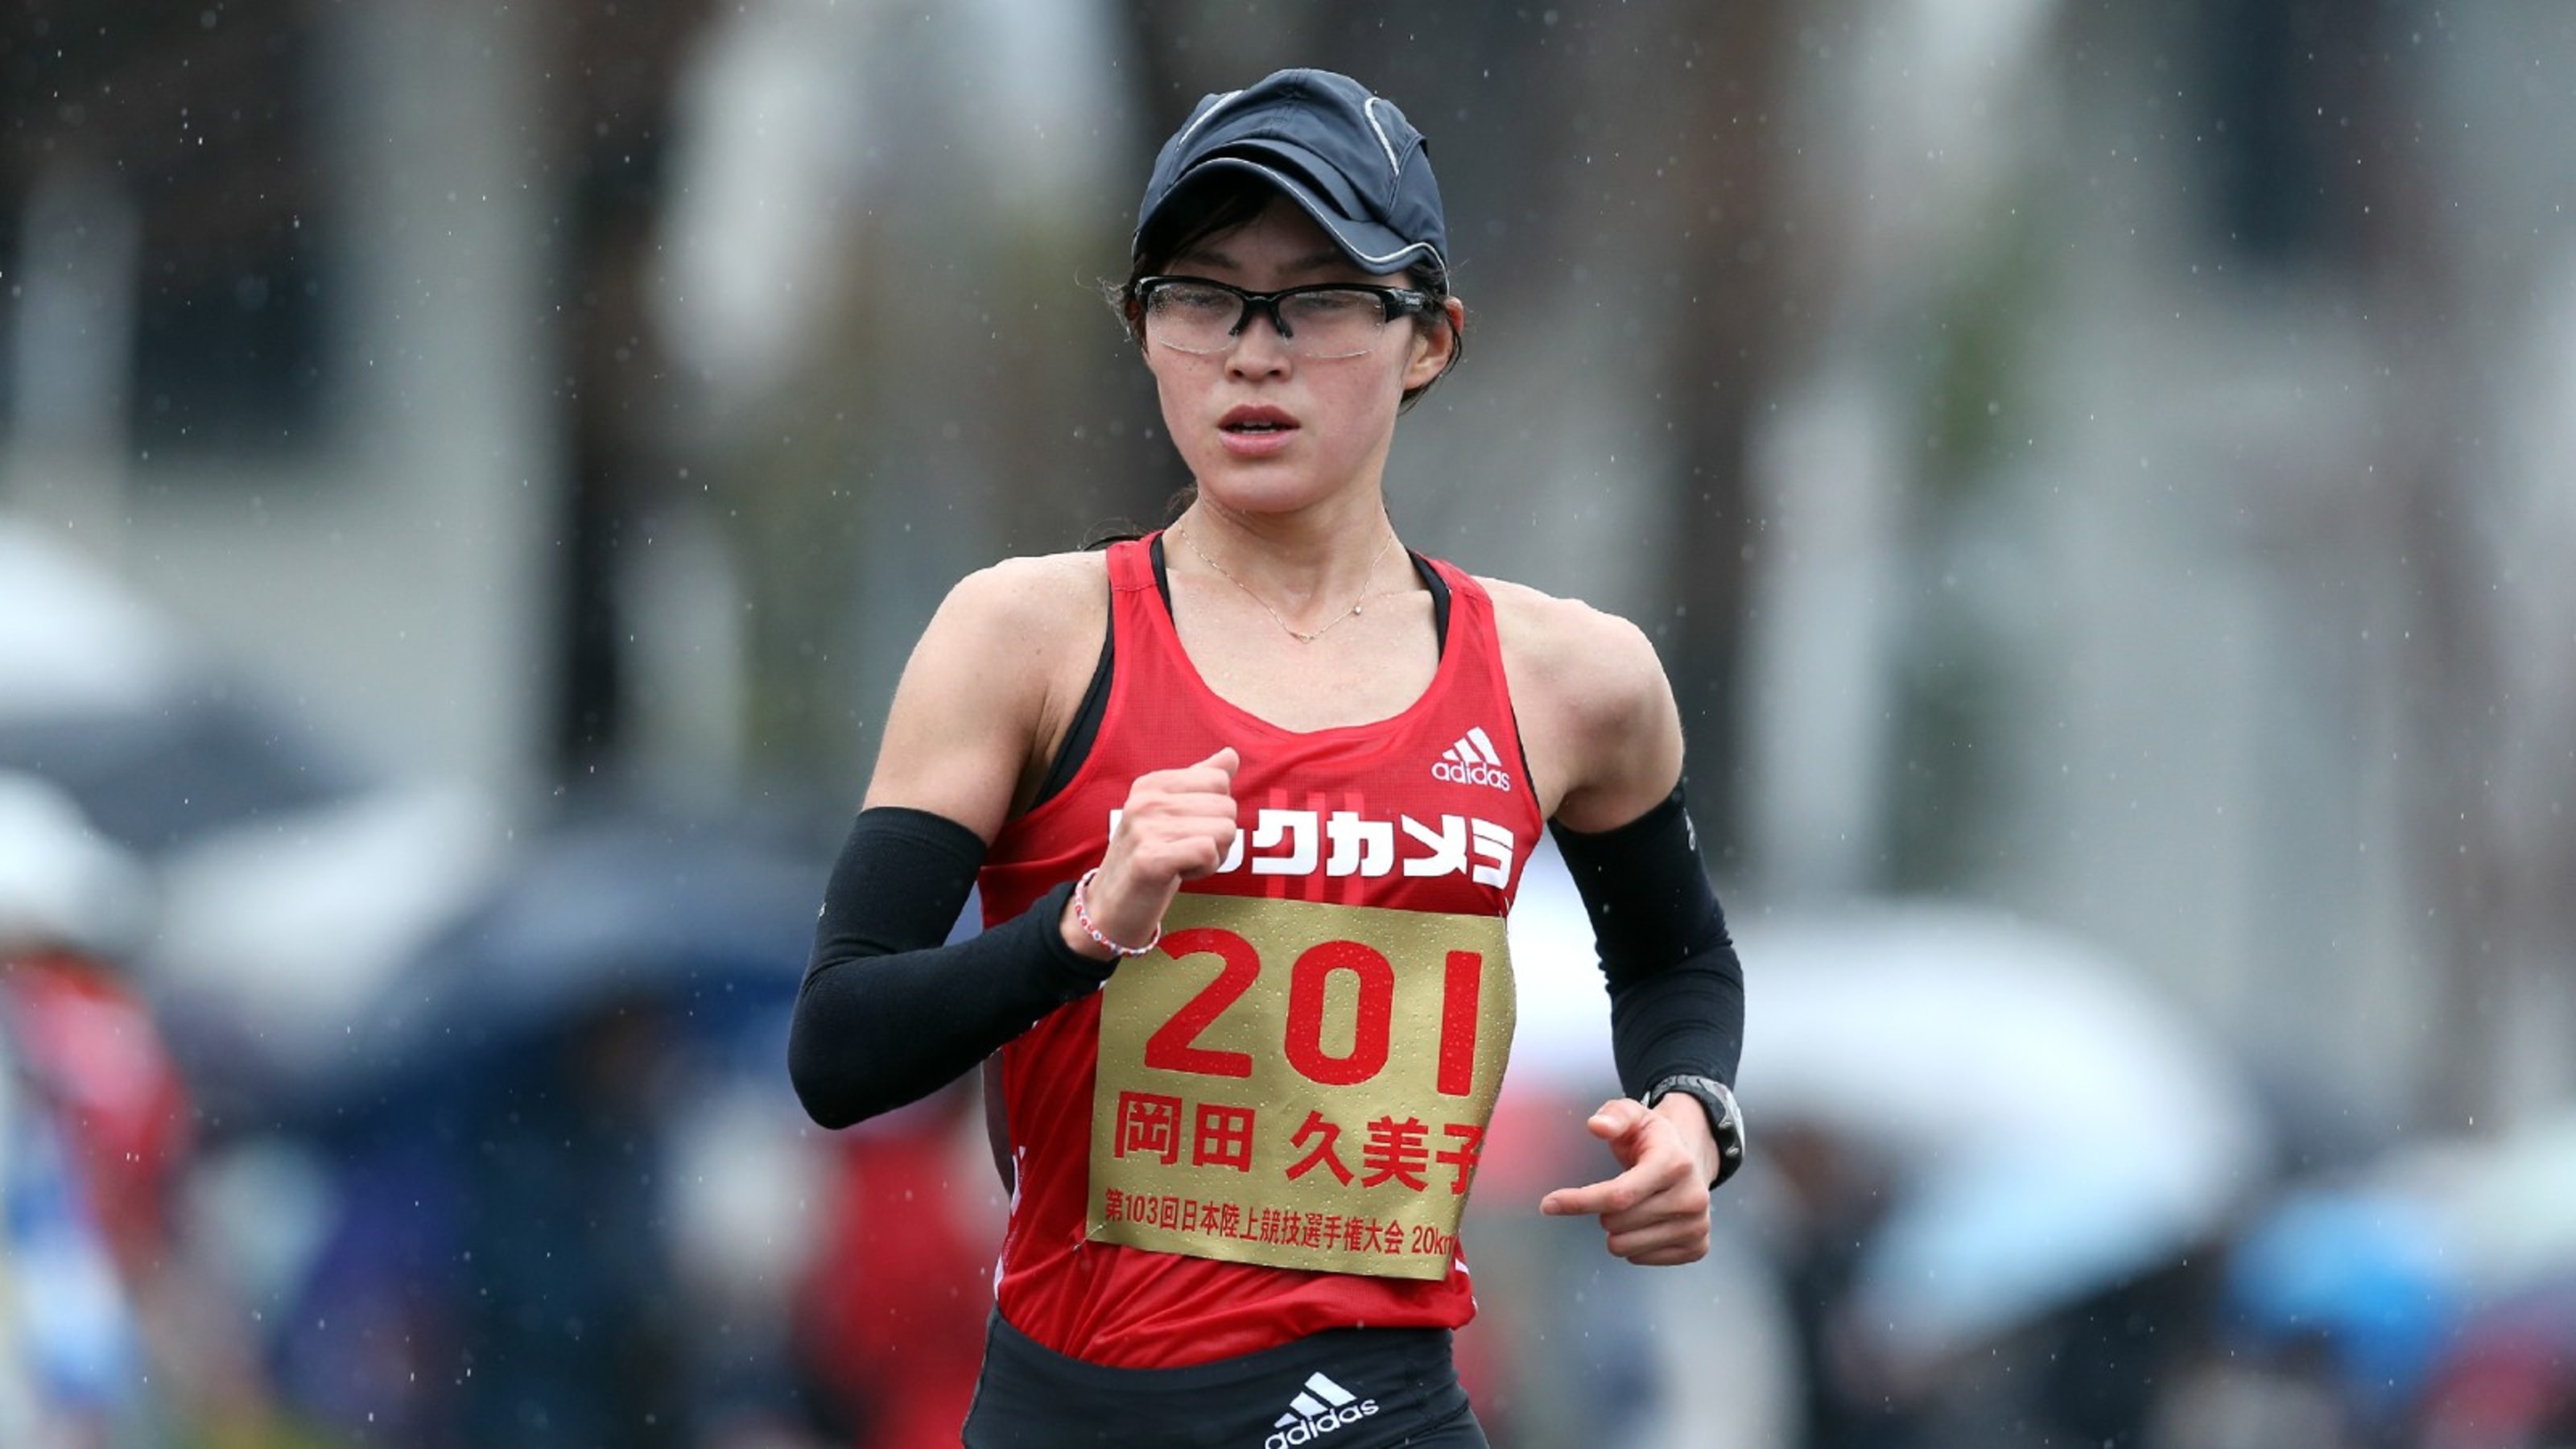 岡田久美子 女子競歩の先駆者が苦しんだ体重管理 恩師の言葉で自分らしさを取り戻す アスリートの原点